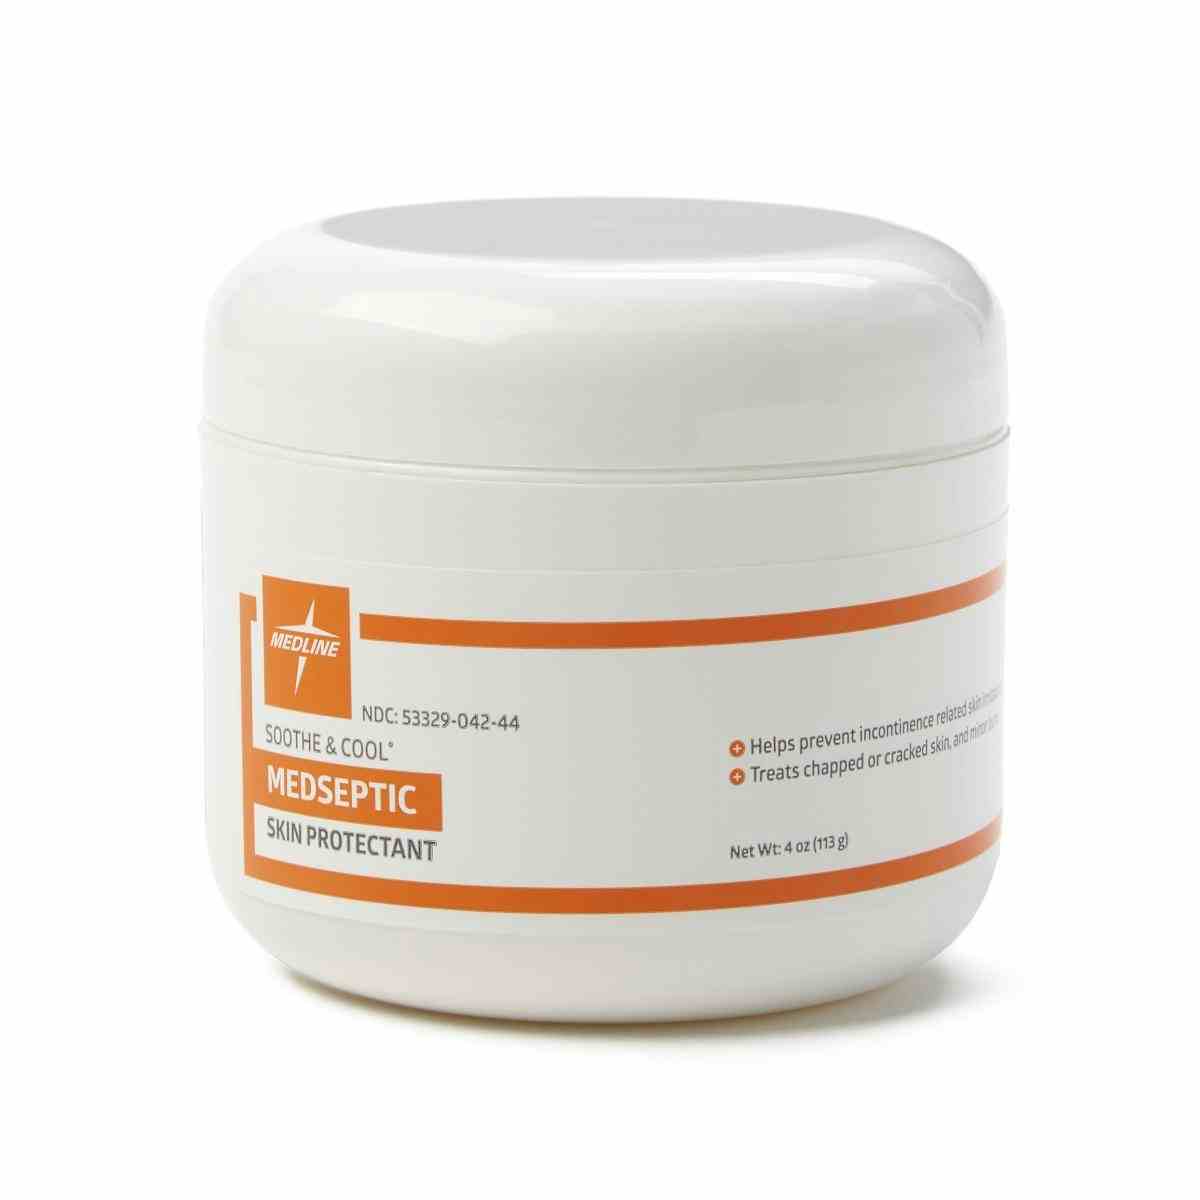 Medline Soothe and Cool Medseptic Skin Protectant Cream, 4 oz. Jar, MSC095654H, 1 Each